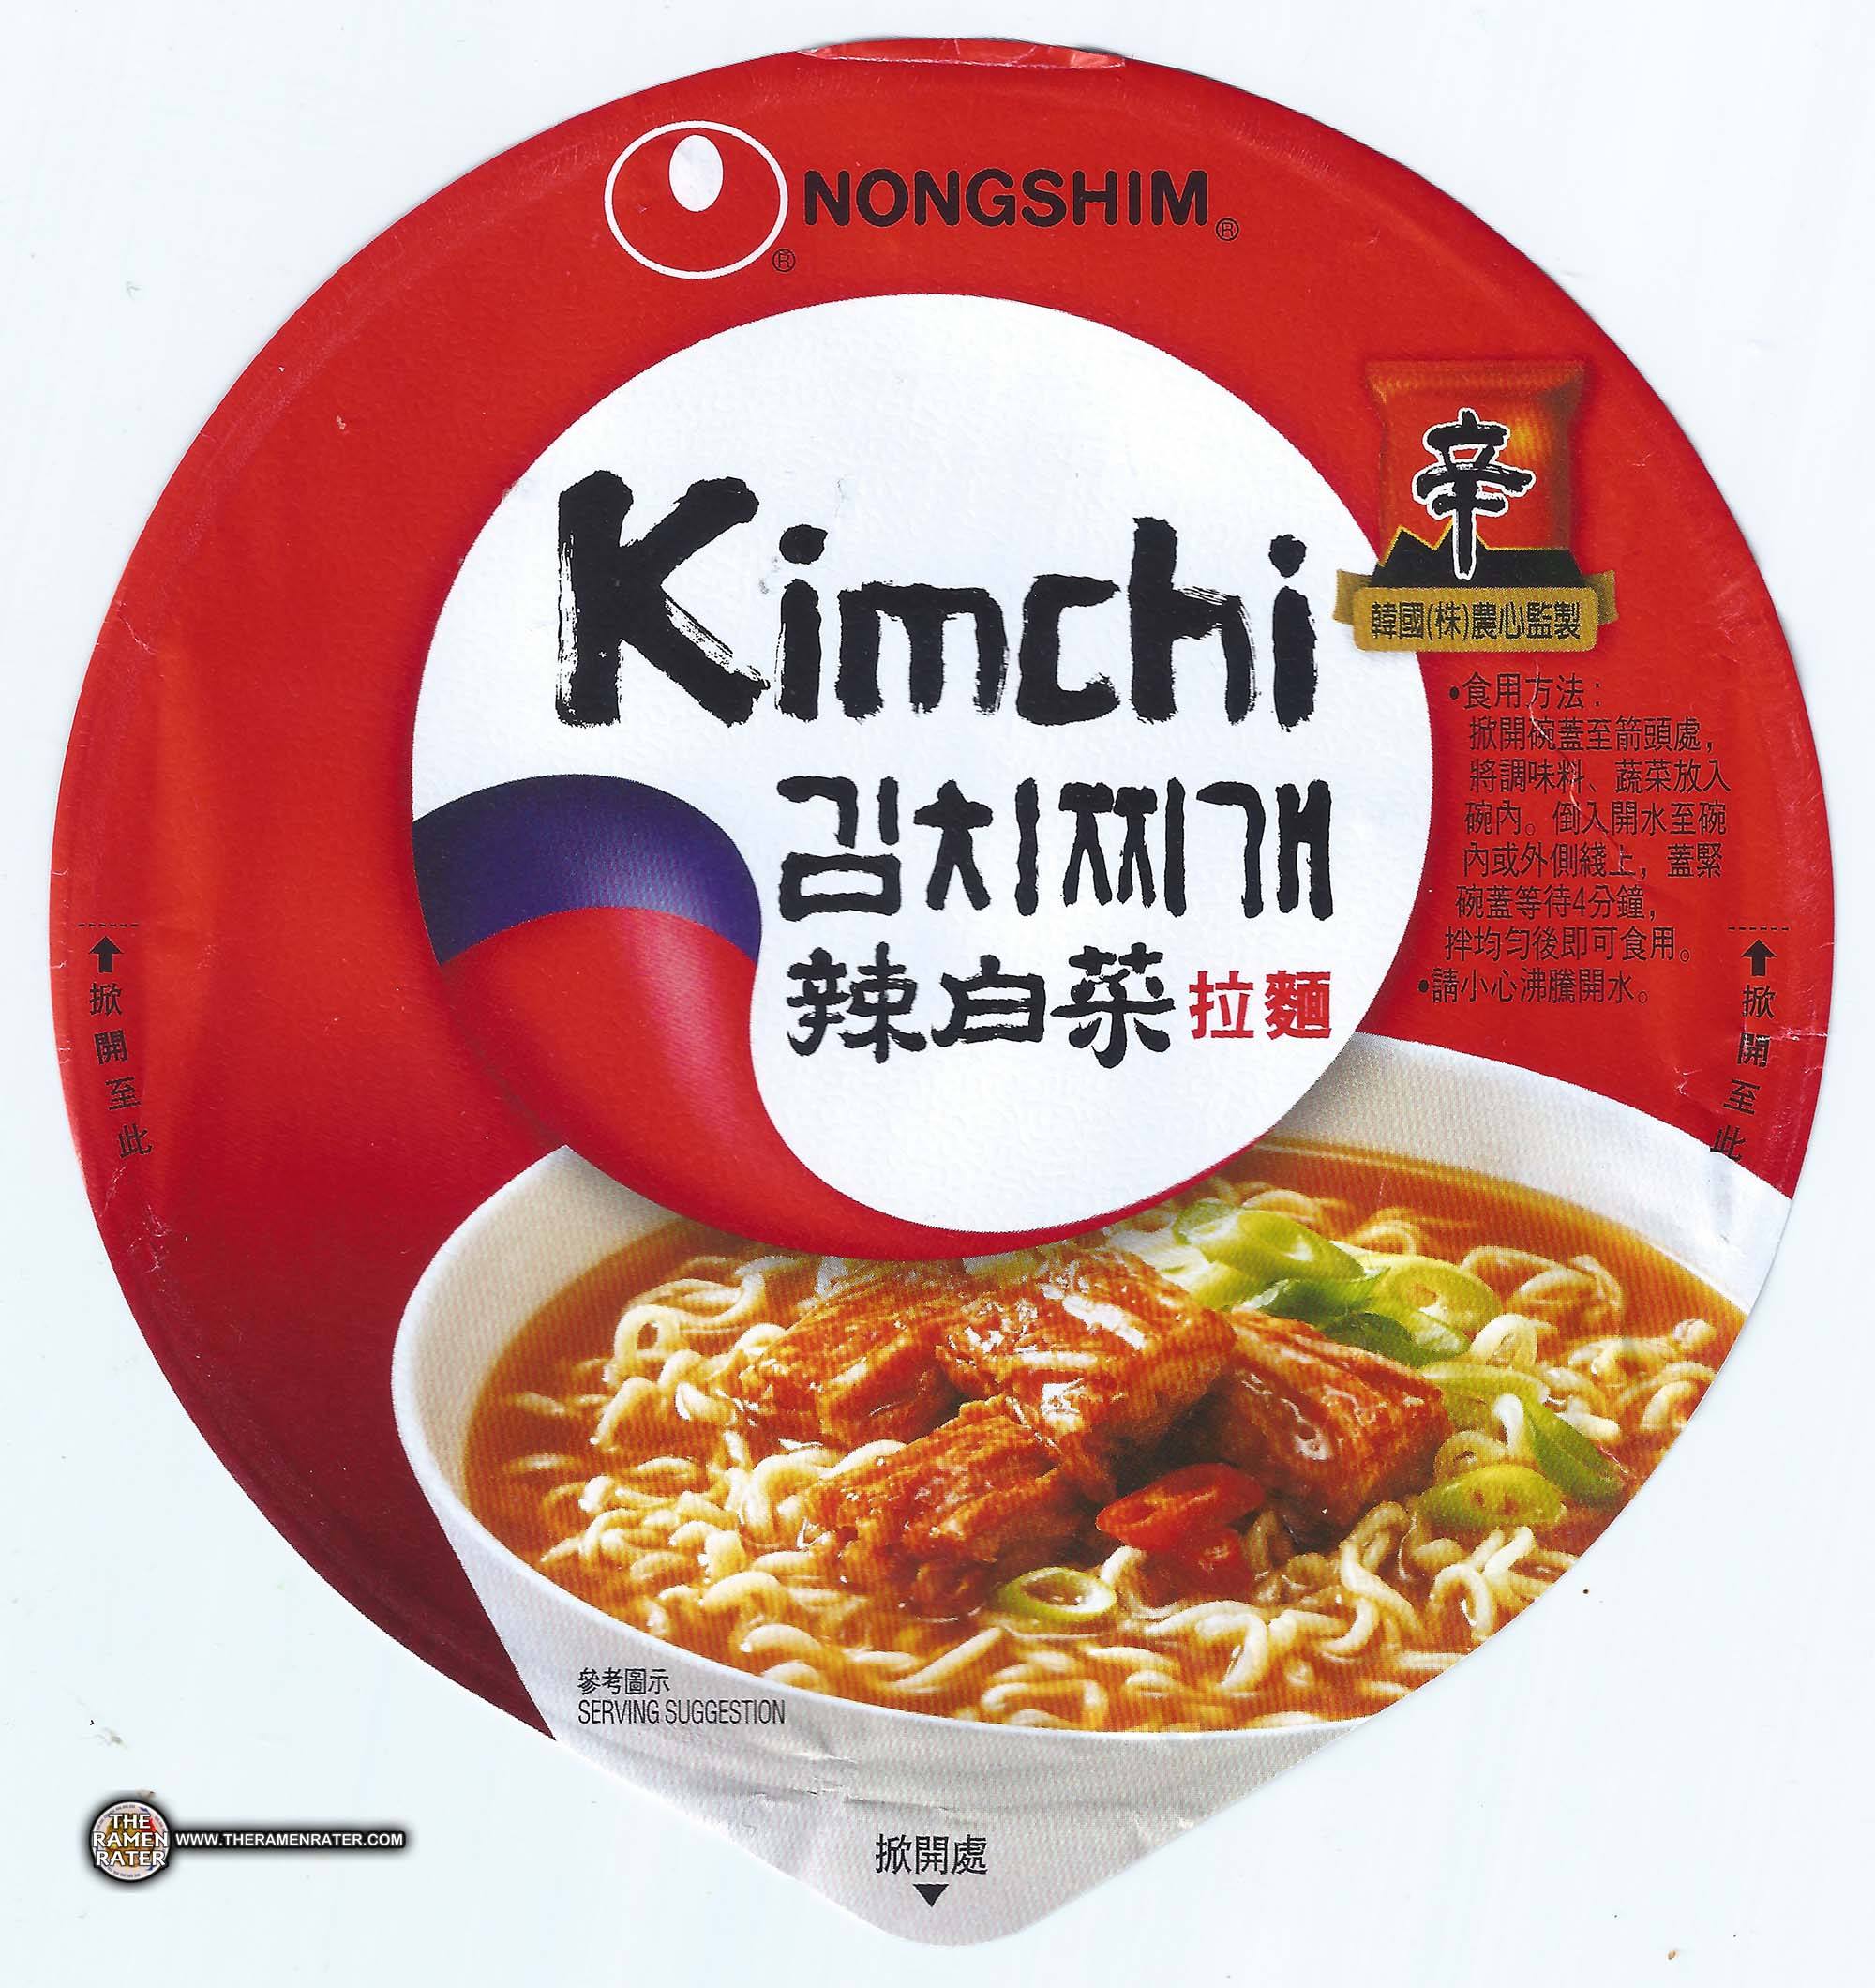 Korean instant noodle soup with kimchi - Nongshim